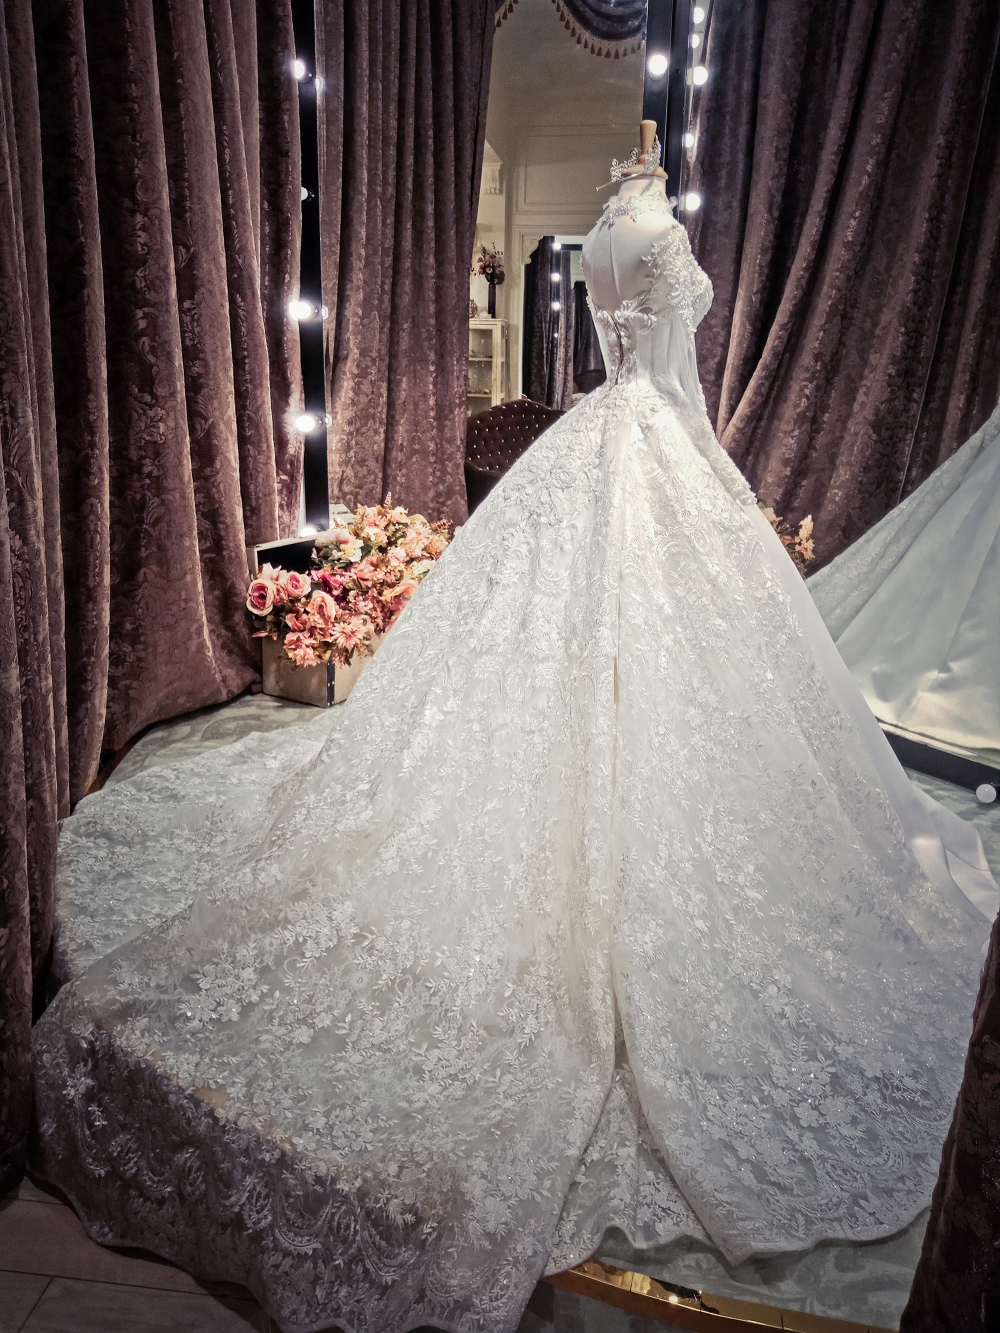 Diệp Lâm Anh và bí mật hai chiếc váy cưới trị giá 200 triệu - 2sao